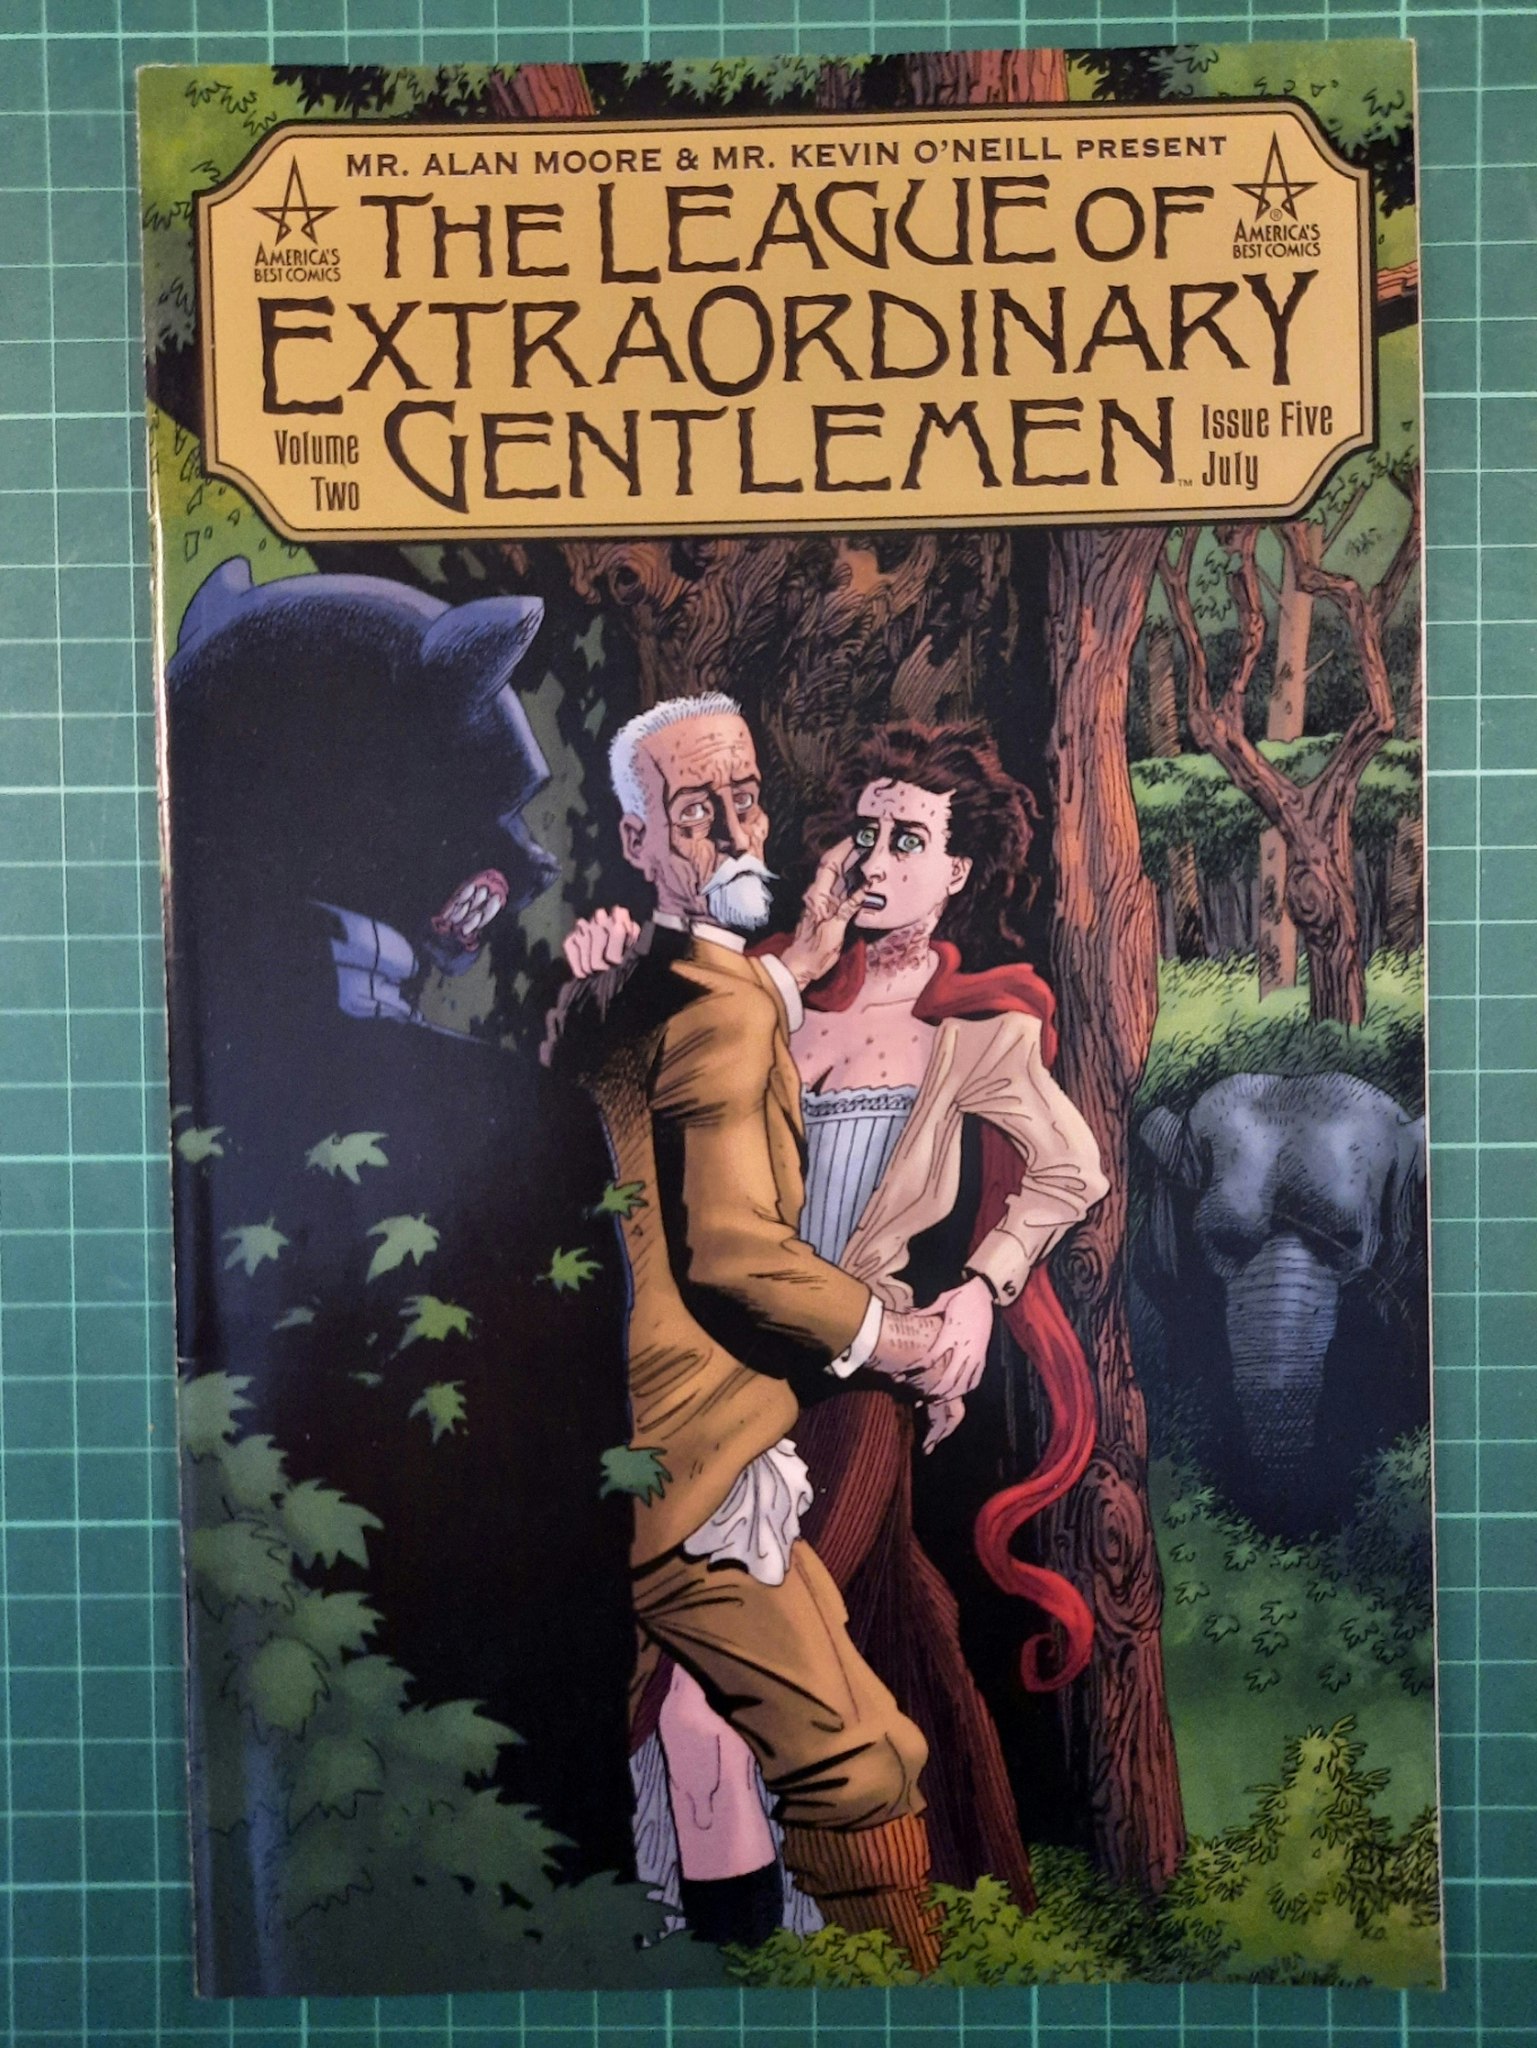 The League of extraordinary gentlemen Vol 2 #5